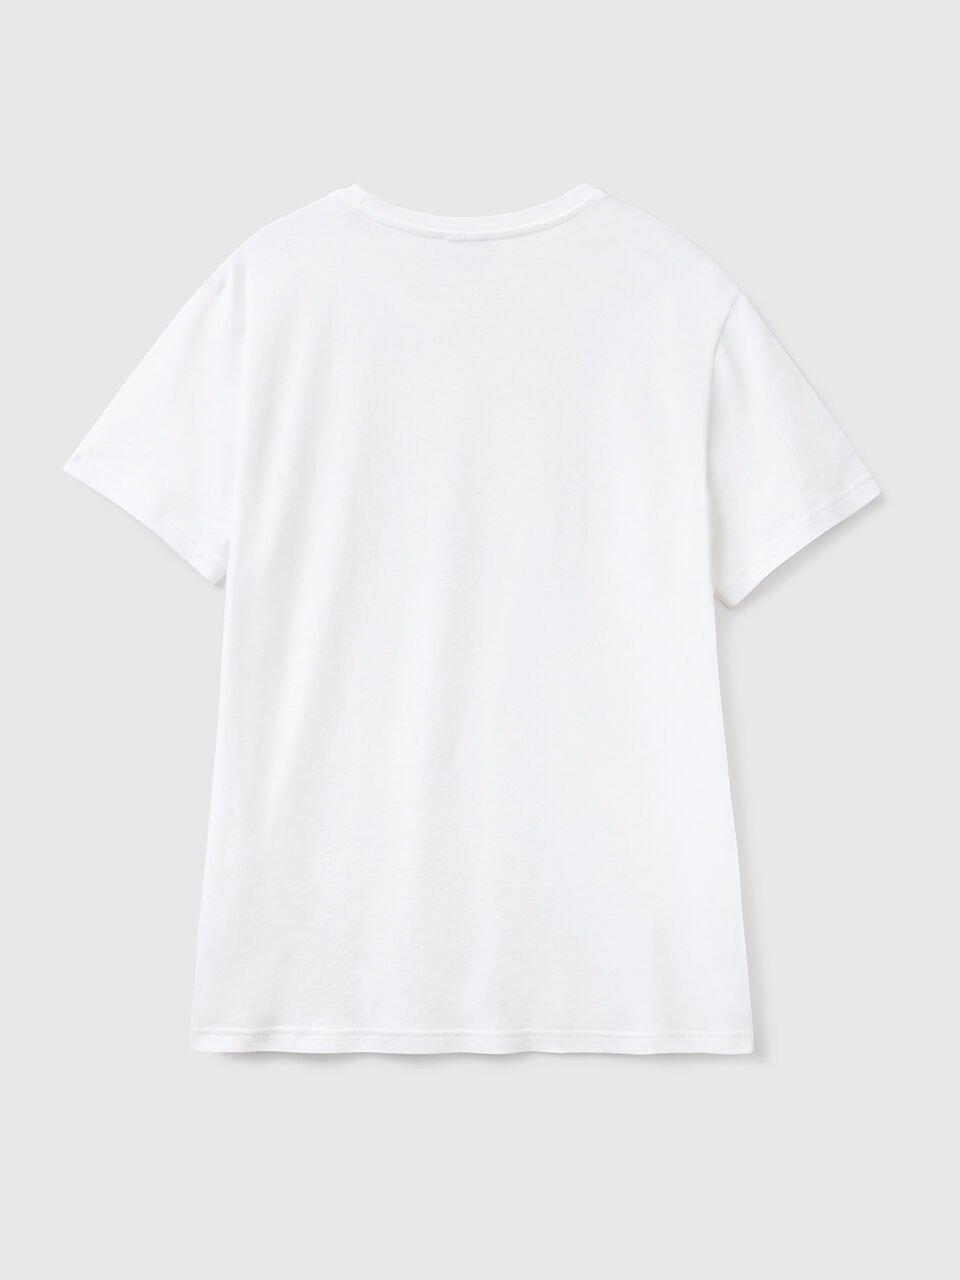 White t-shirt - White